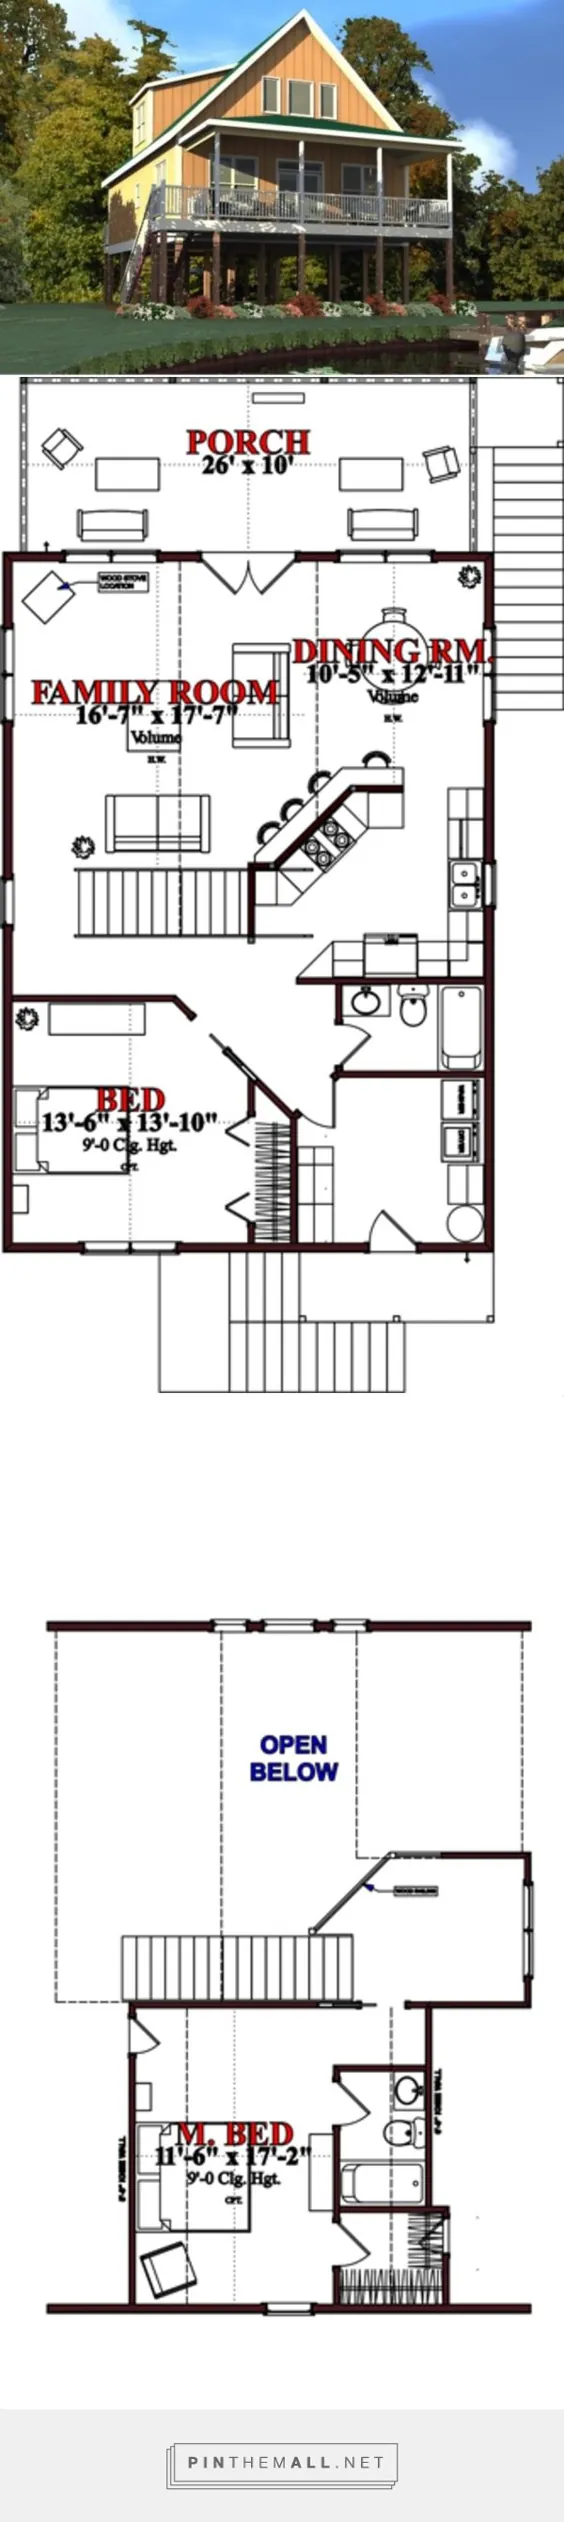 طرح خانه به سبک کلبه - 2 تختخواب 2 حمام 1536 متر مربع / طرح طرح # 63-354